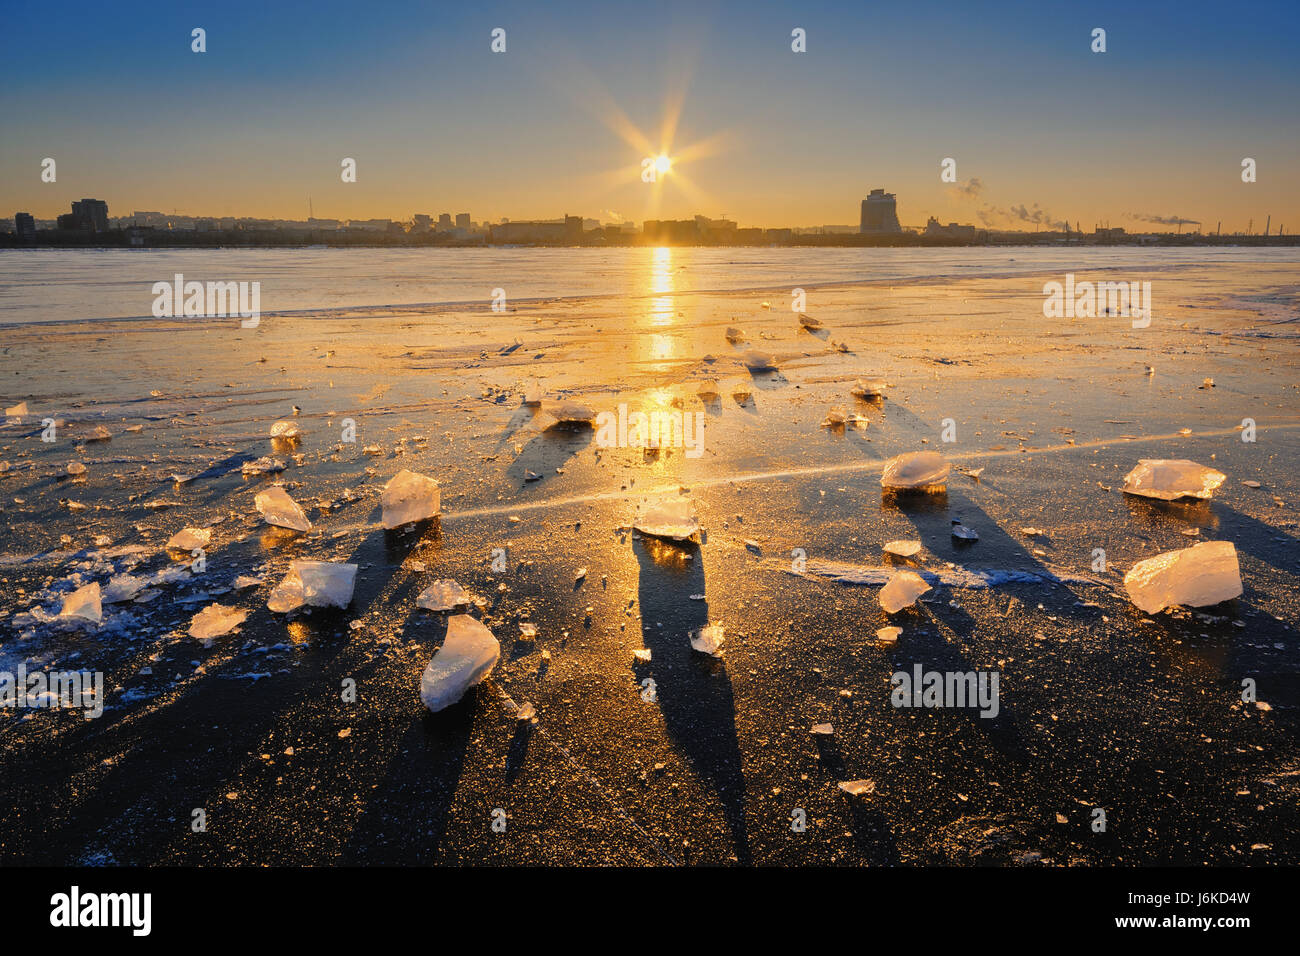 Banca del fiume sotto i raggi del sole al tramonto in inverno. L'Ucraina, il Dnepr Foto Stock